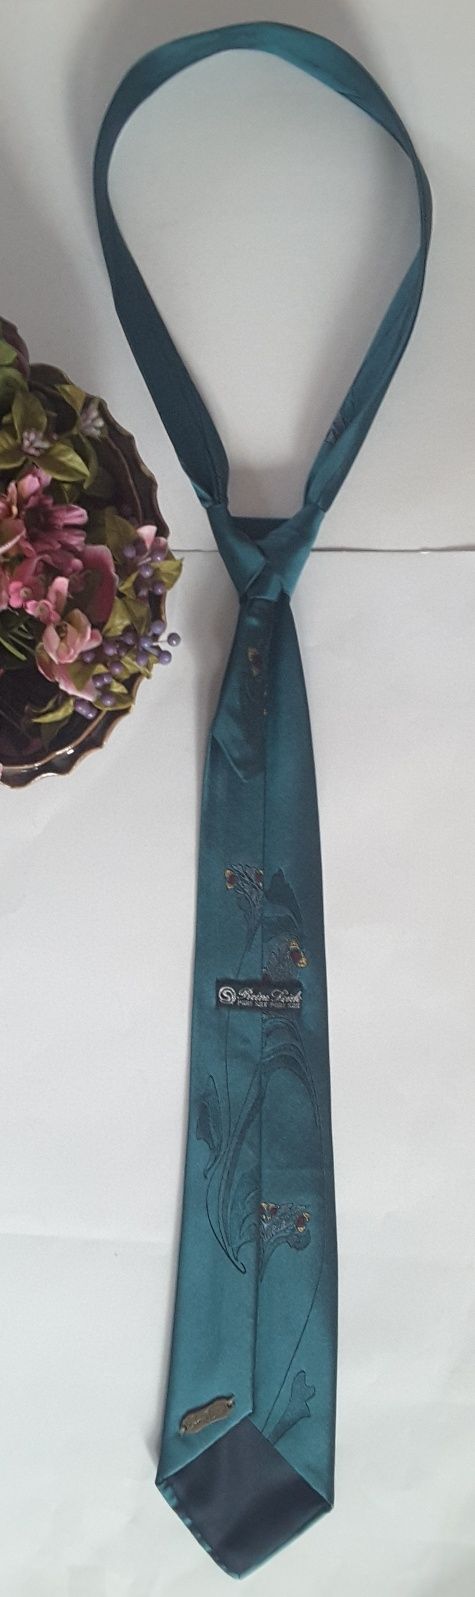 Jedwabny krawat " Gino Pilati " w kolorze morskiej zieleni + spinka